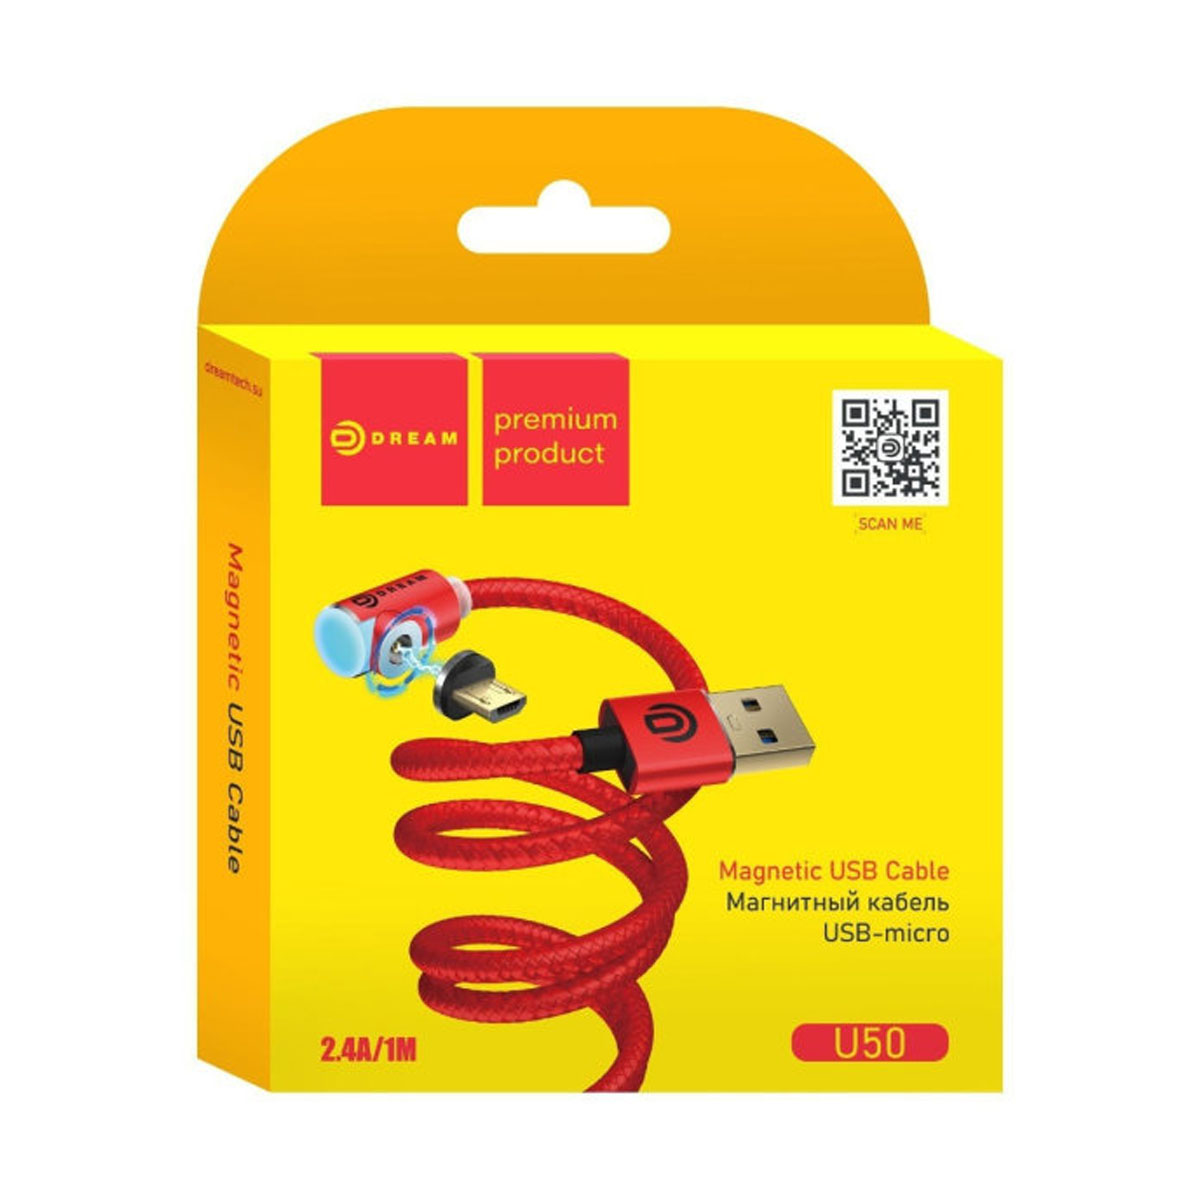 Магнитный зарядный кабель DREAM U50 Micro USB, 2.4A, длина 1 метр, цвет красный